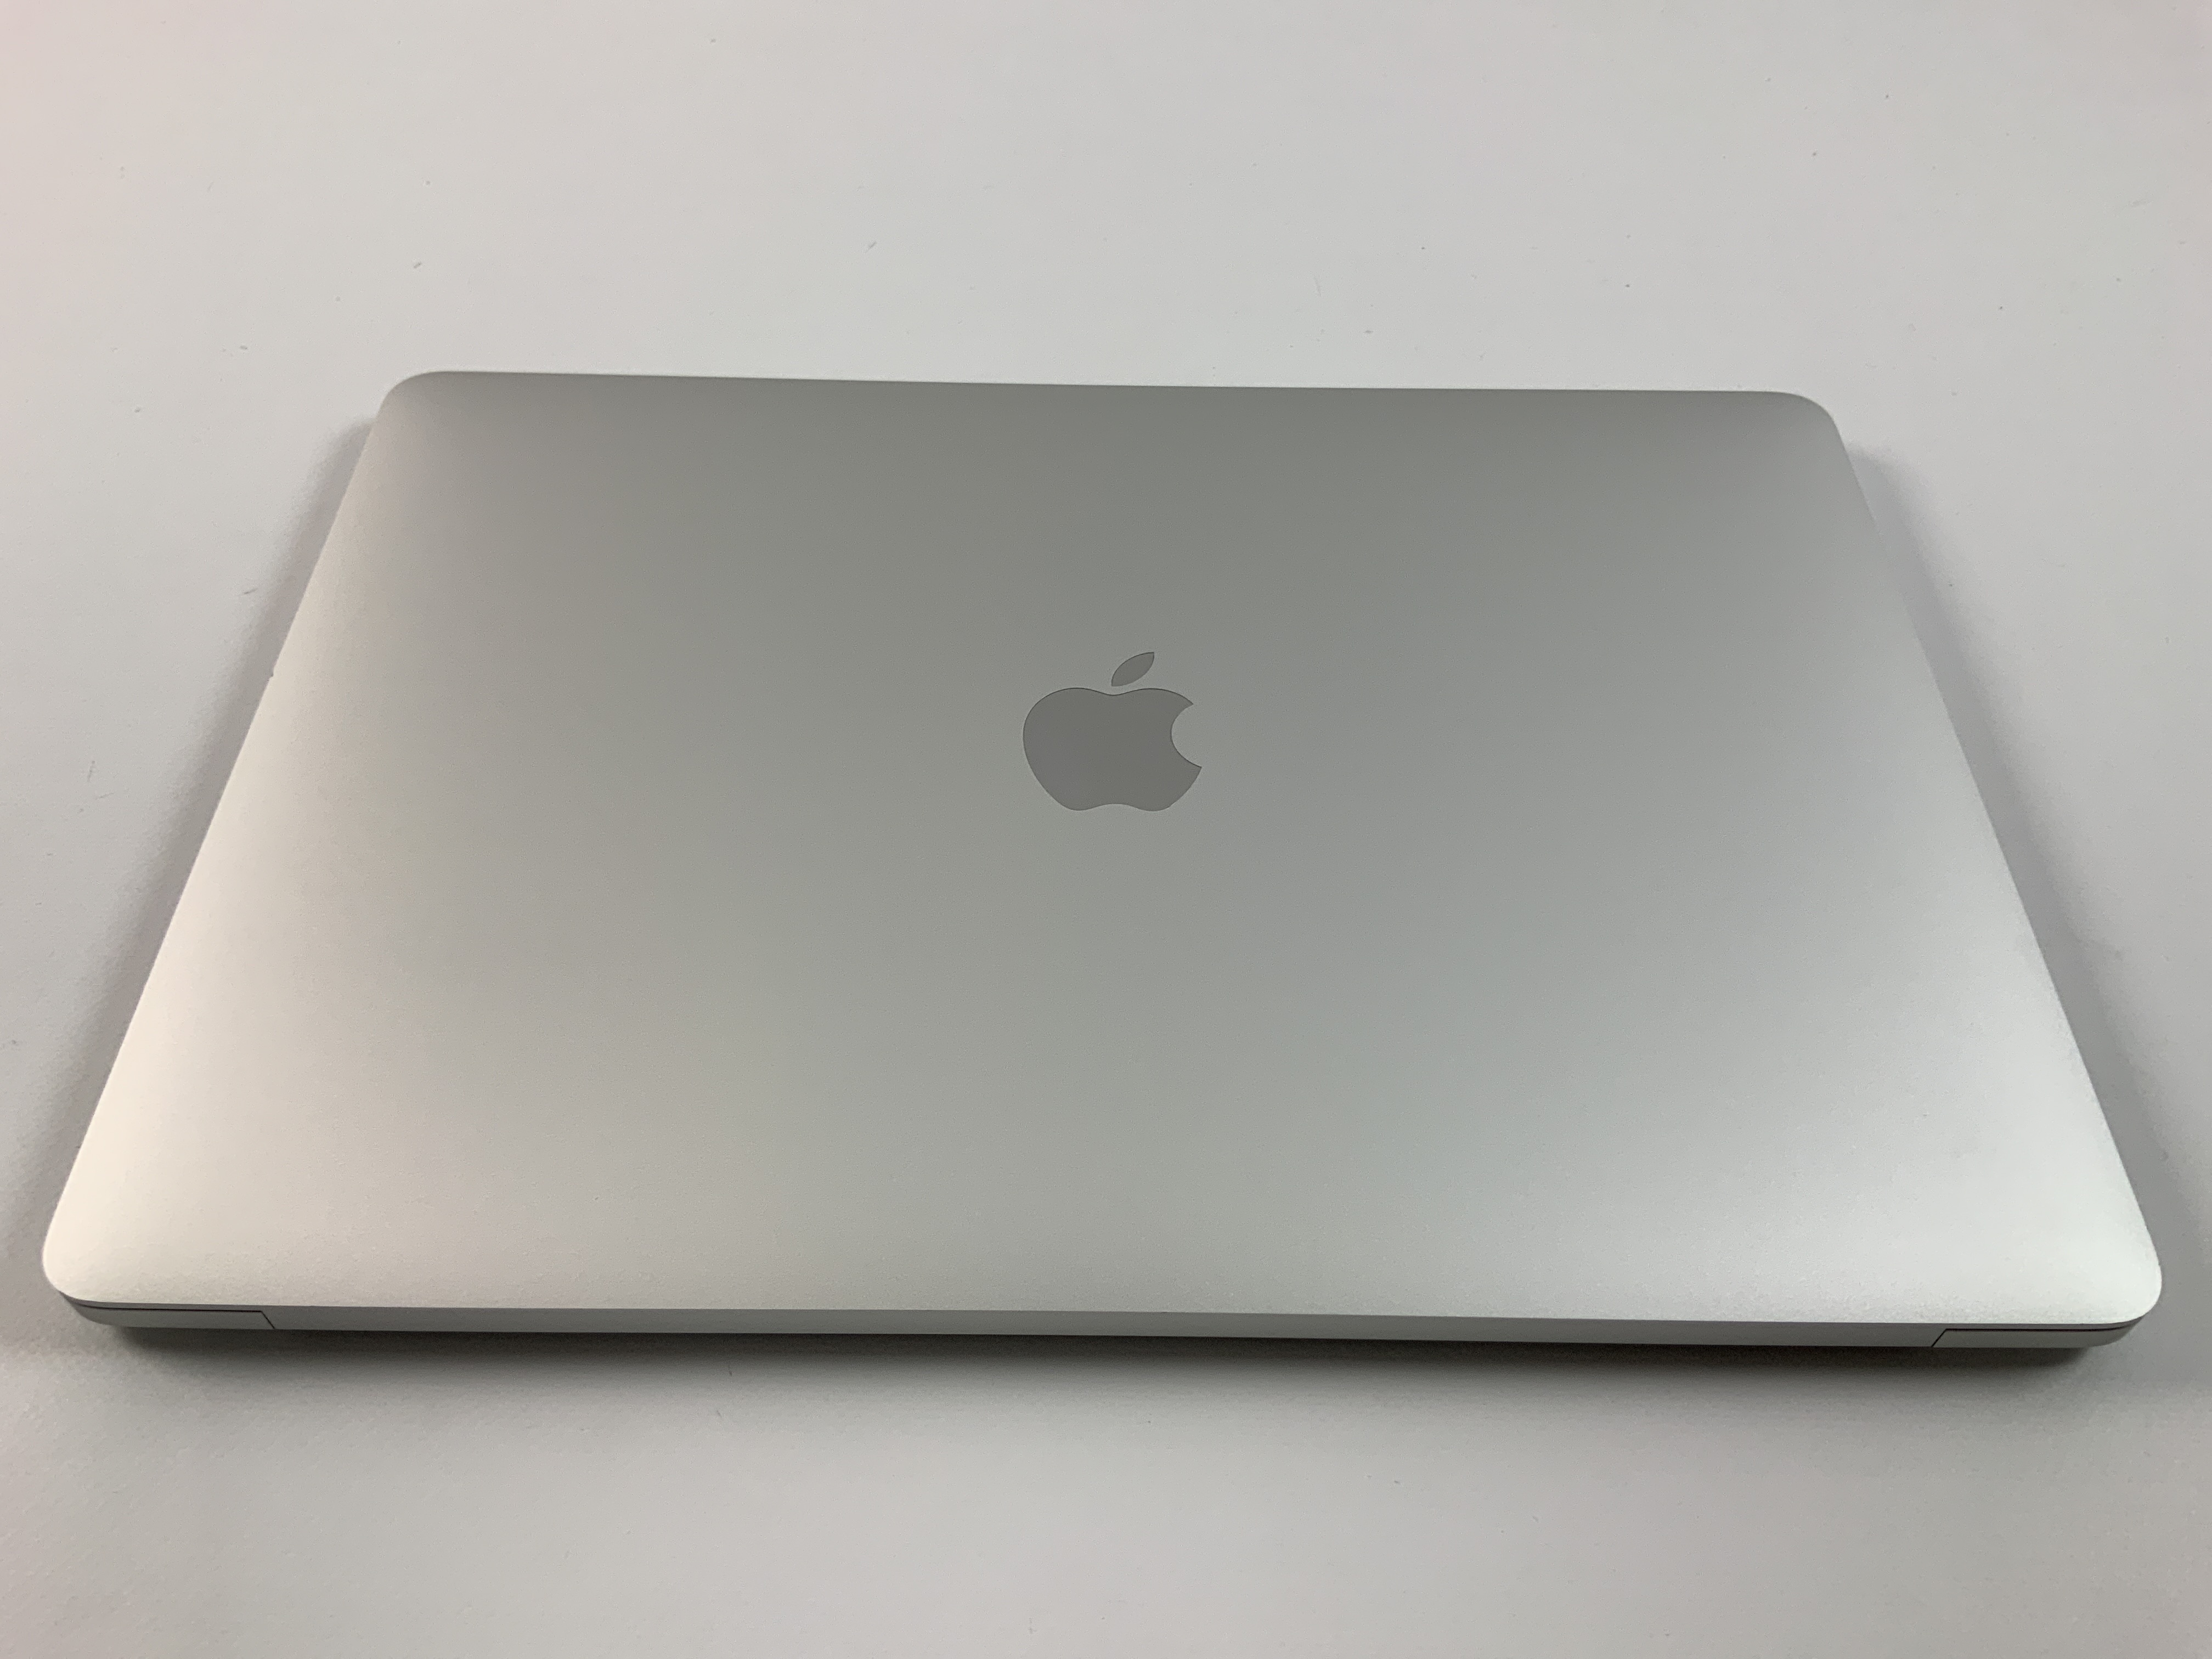 MacBook Pro 13" 2TBT Mid 2020 (Intel Quad-Core i5 1.4 GHz 8 GB RAM 512 GB SSD), Silver, Intel Quad-Core i5 1.4 GHz, 8 GB RAM, 512 GB SSD, Bild 2